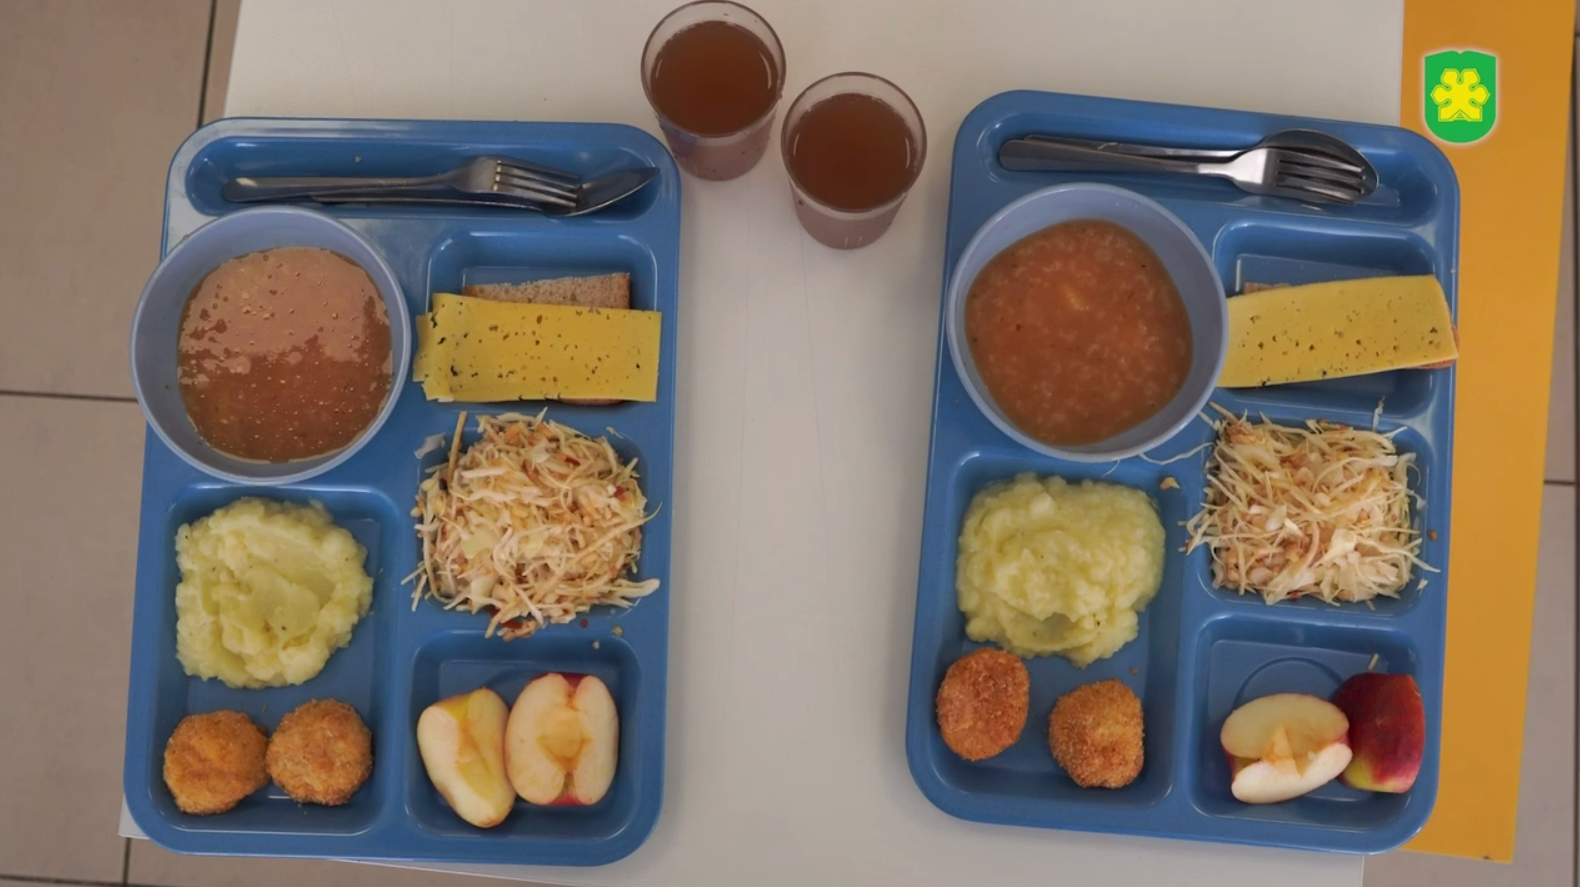 Фабрика-кухня в Бучі почала годувати учнів: які школи отримали обід